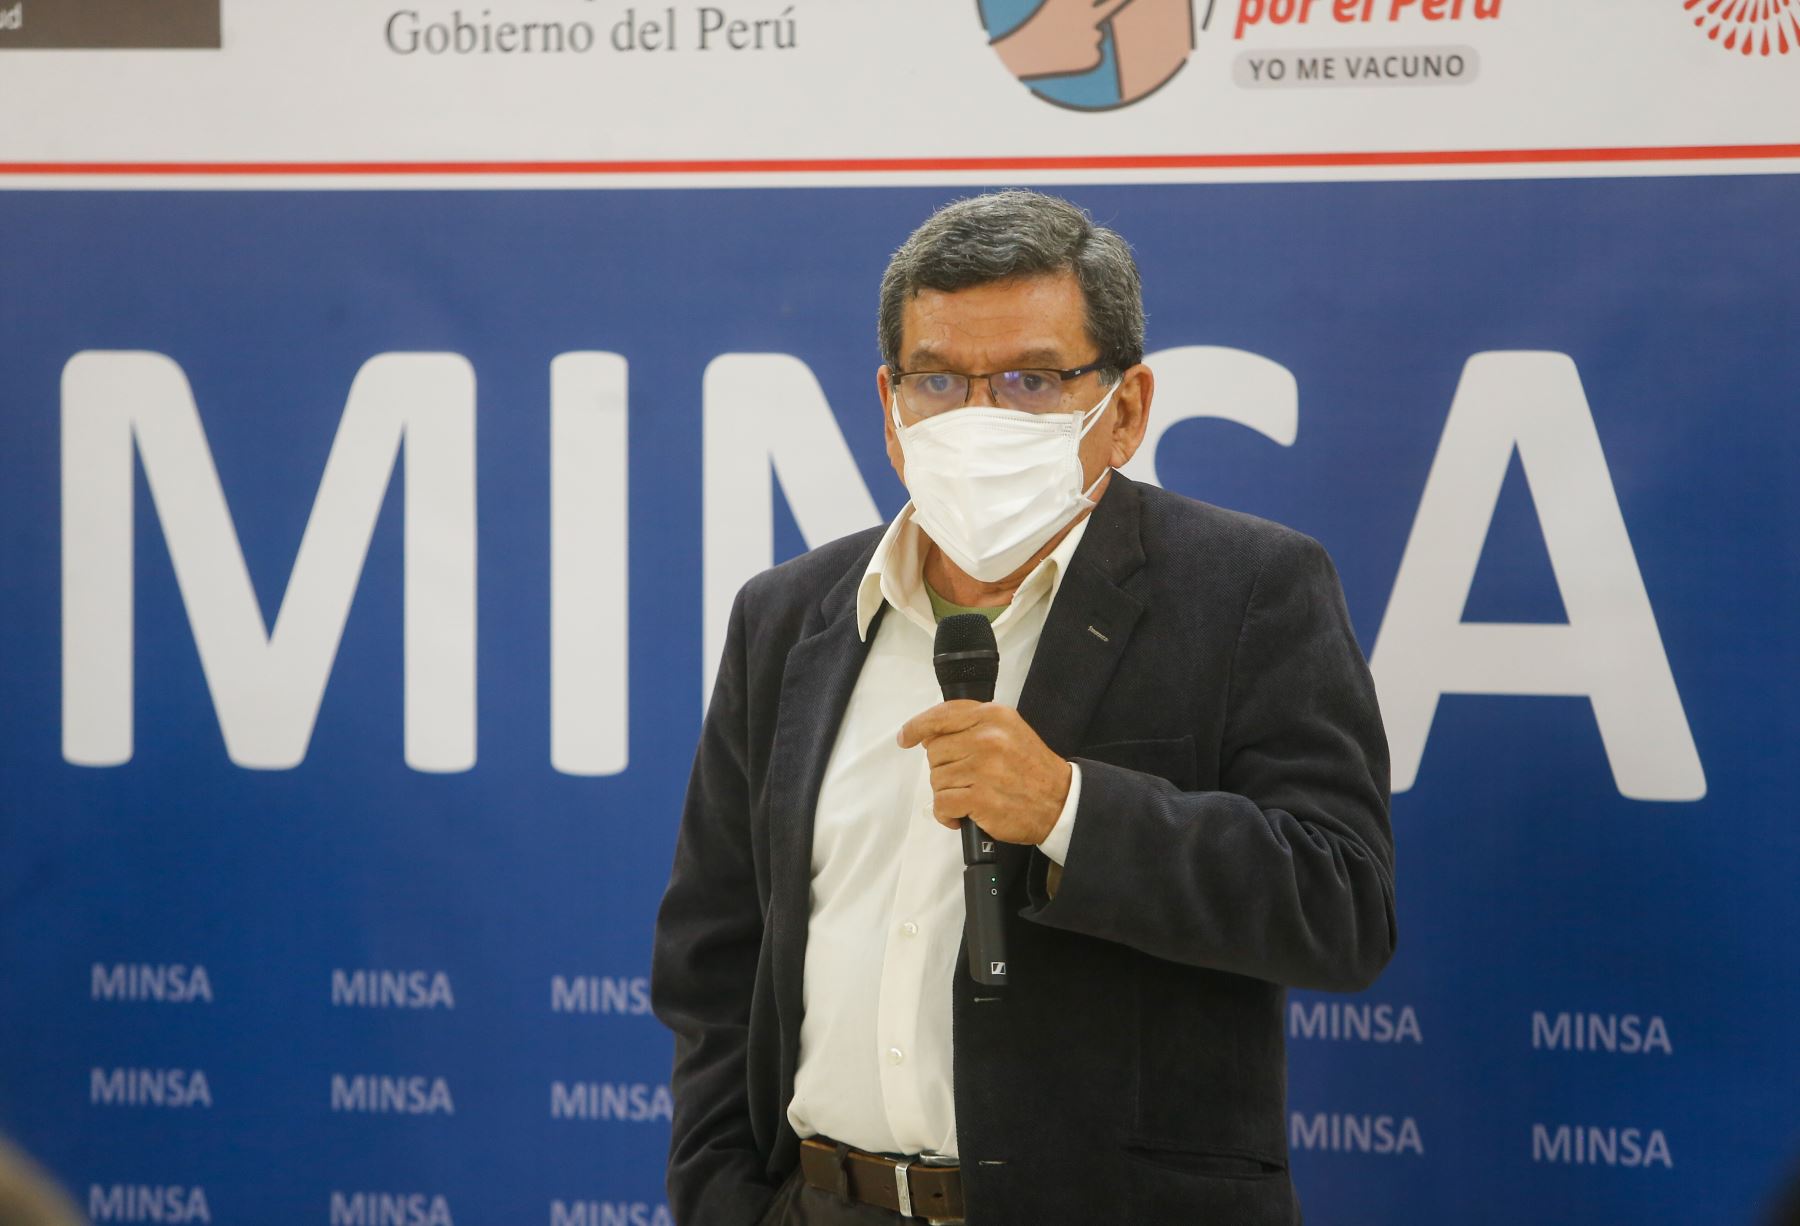 Portada: Hernando Cevallos: Todos los peruanos debemos cerrar filas contra la pandemia